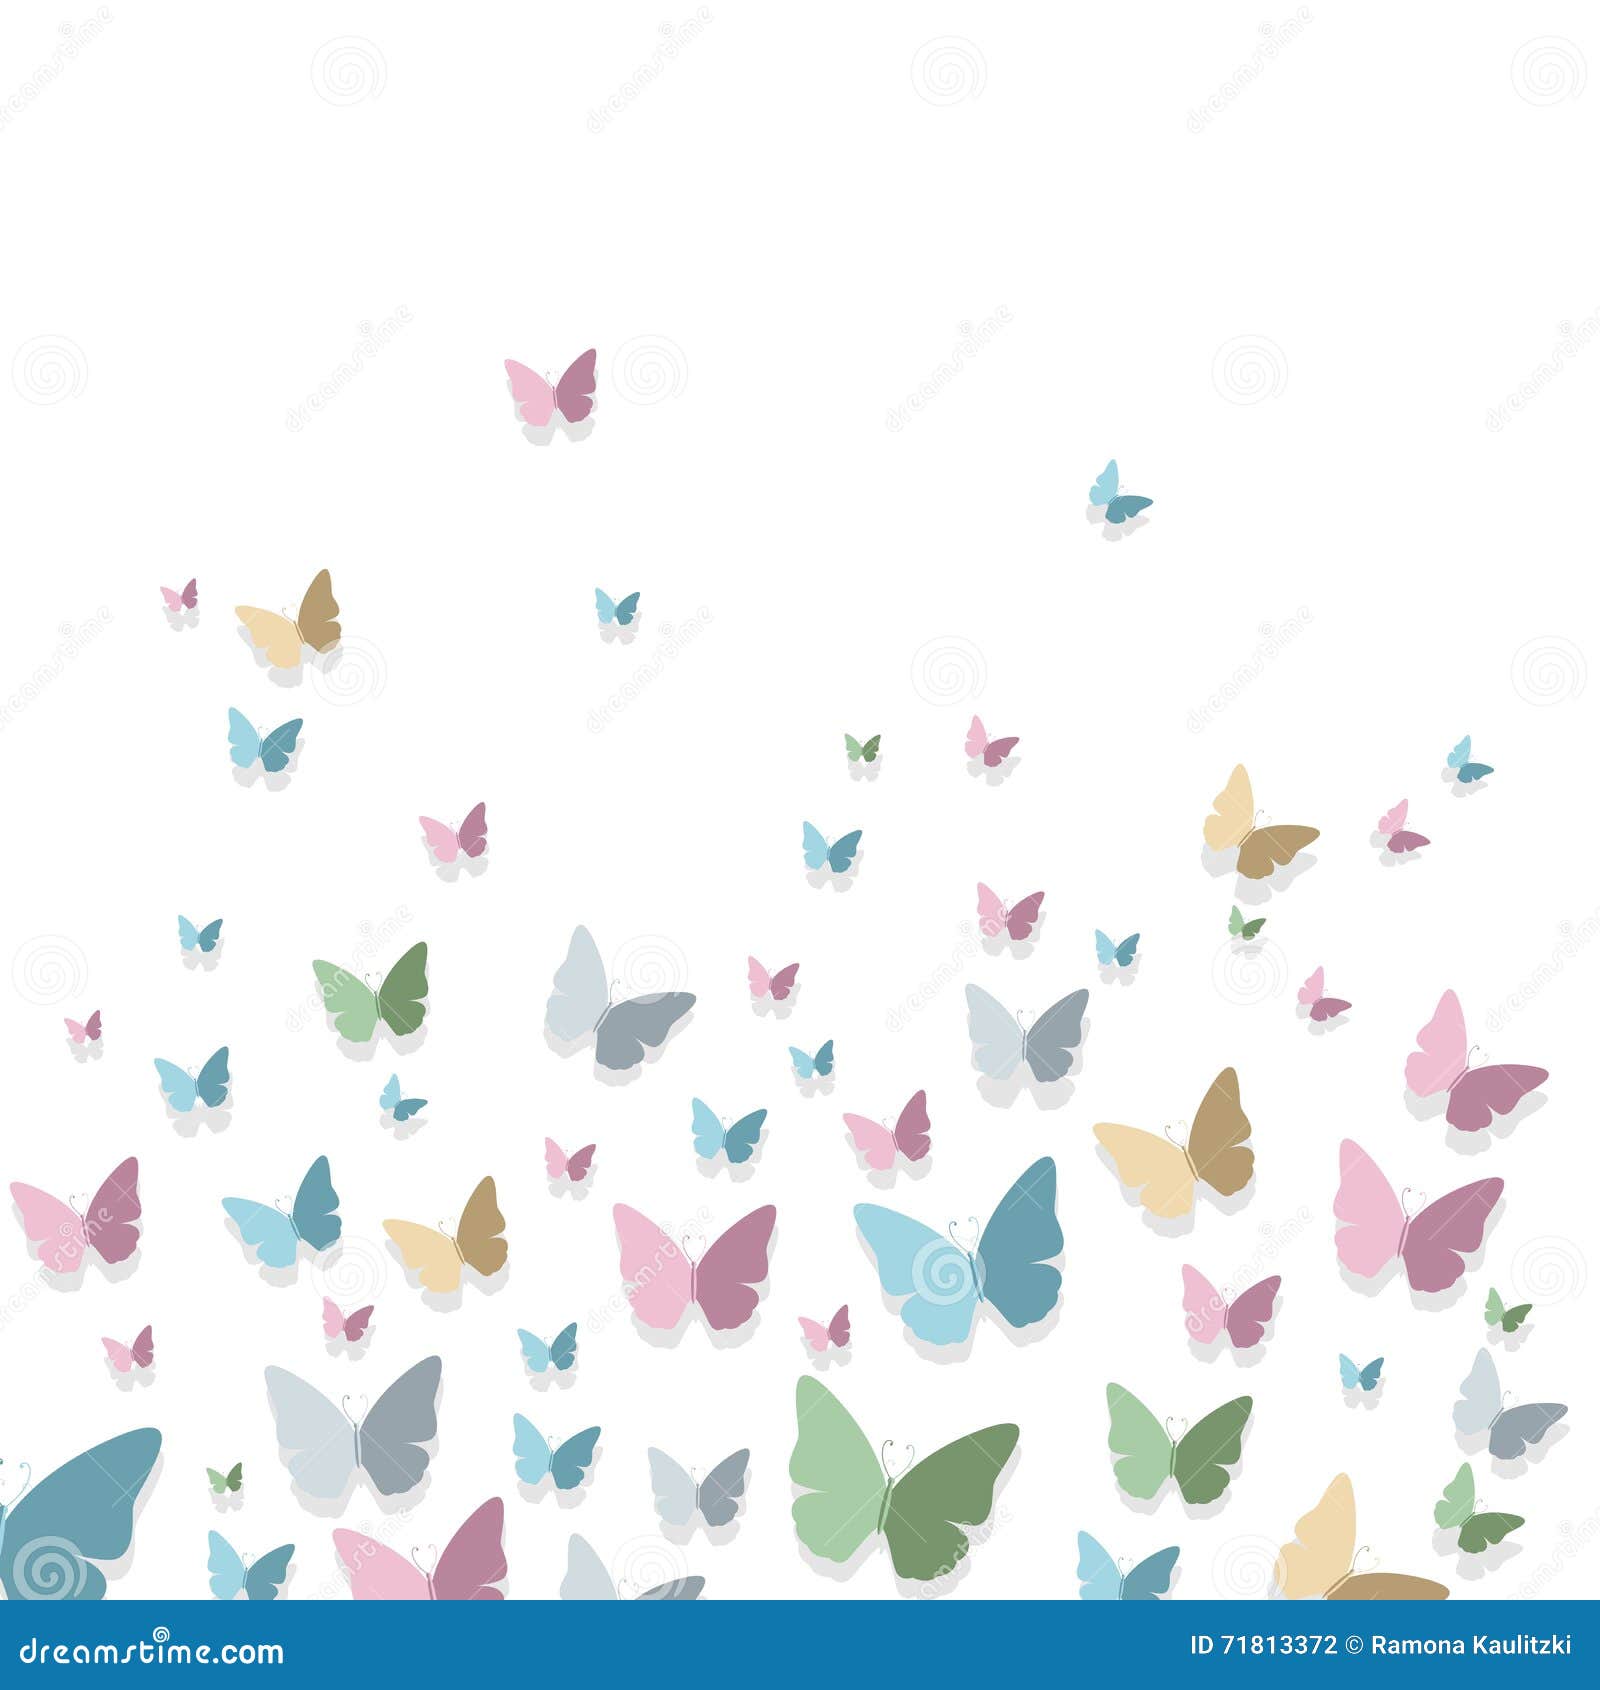 Farbiges Papier Schmetterlinge Stock Abbildung   Illustration von ...